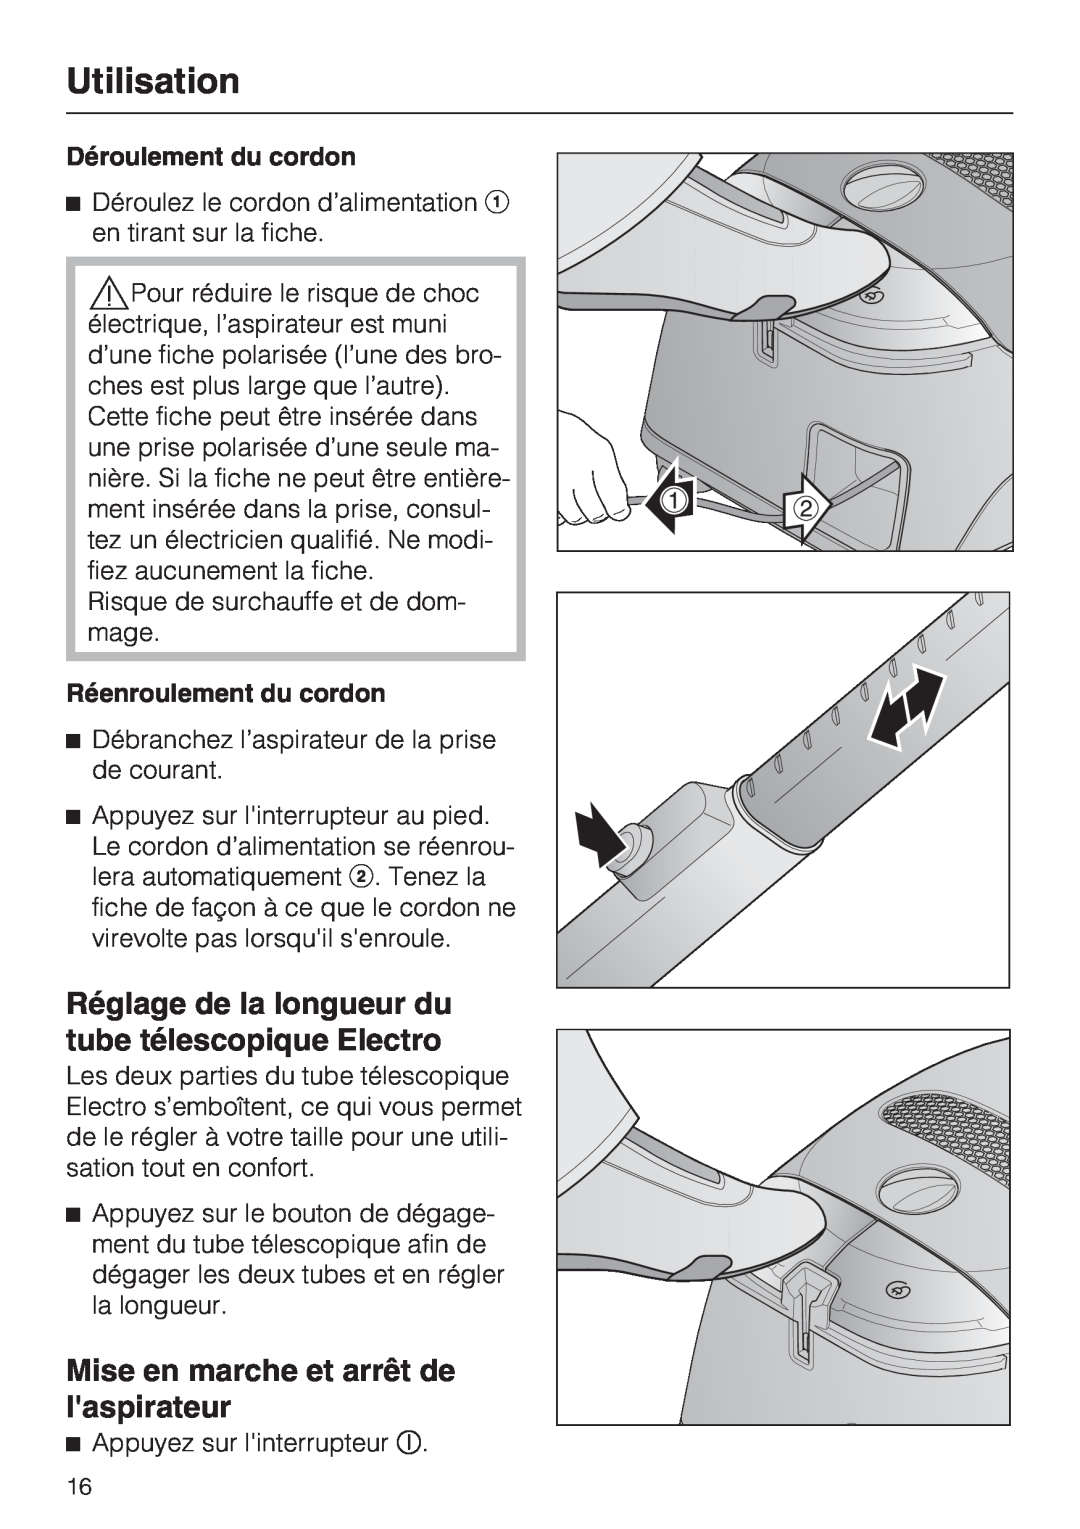 Miele S 2001 manual Mise en marche et arrêt de laspirateur, Déroulement du cordon, Réenroulement du cordon, Utilisation 